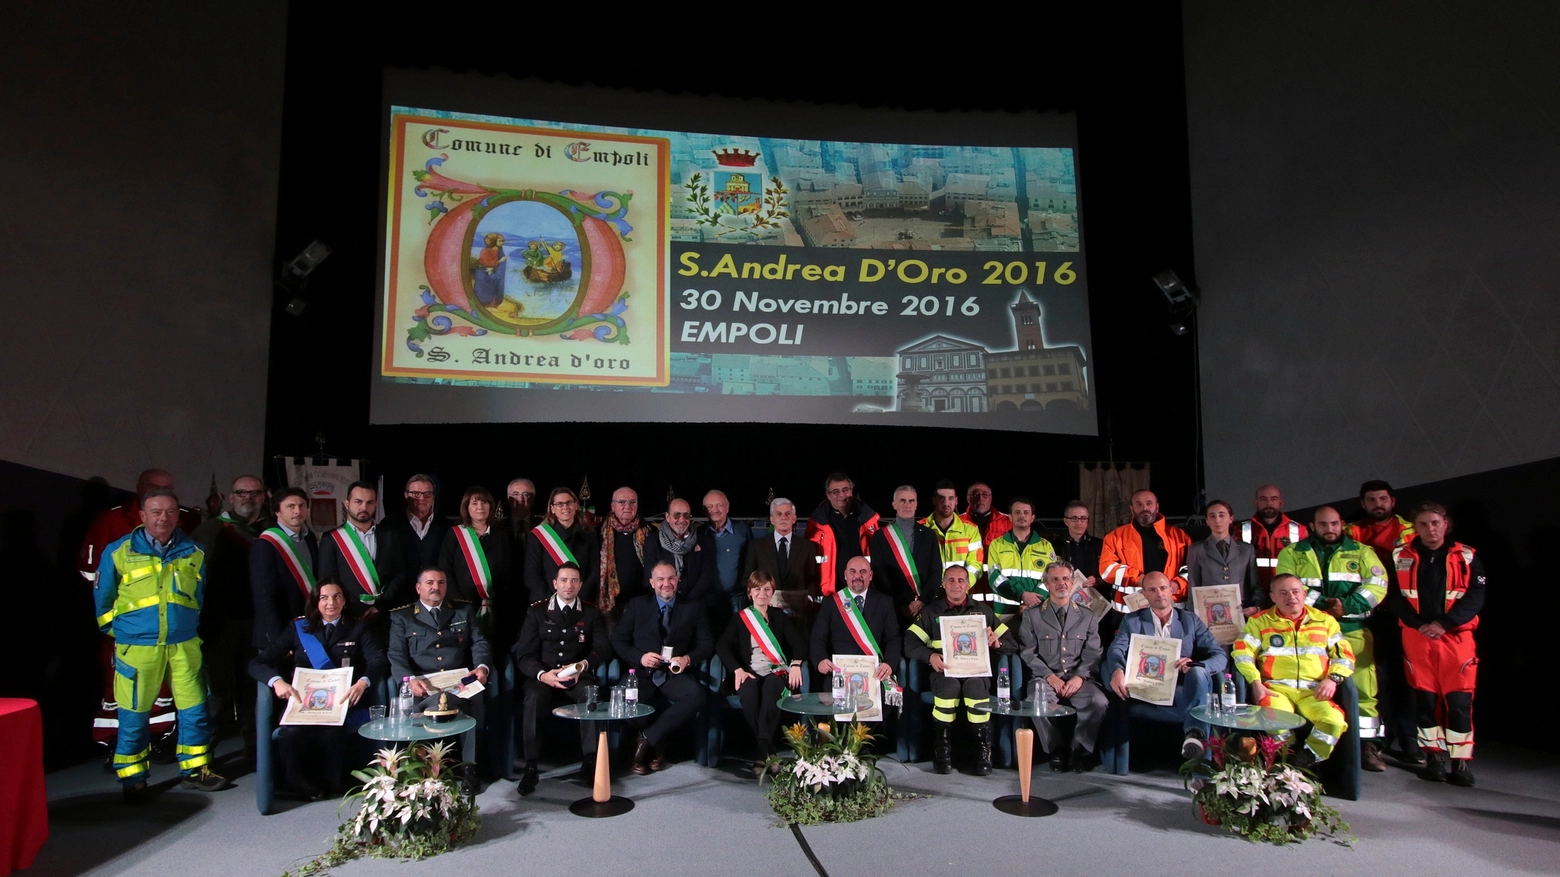 Il gruppo dei premiati con il S.Andrea D'Oro 2016. Foto Gianni Nucci/Fotocronache Germogli